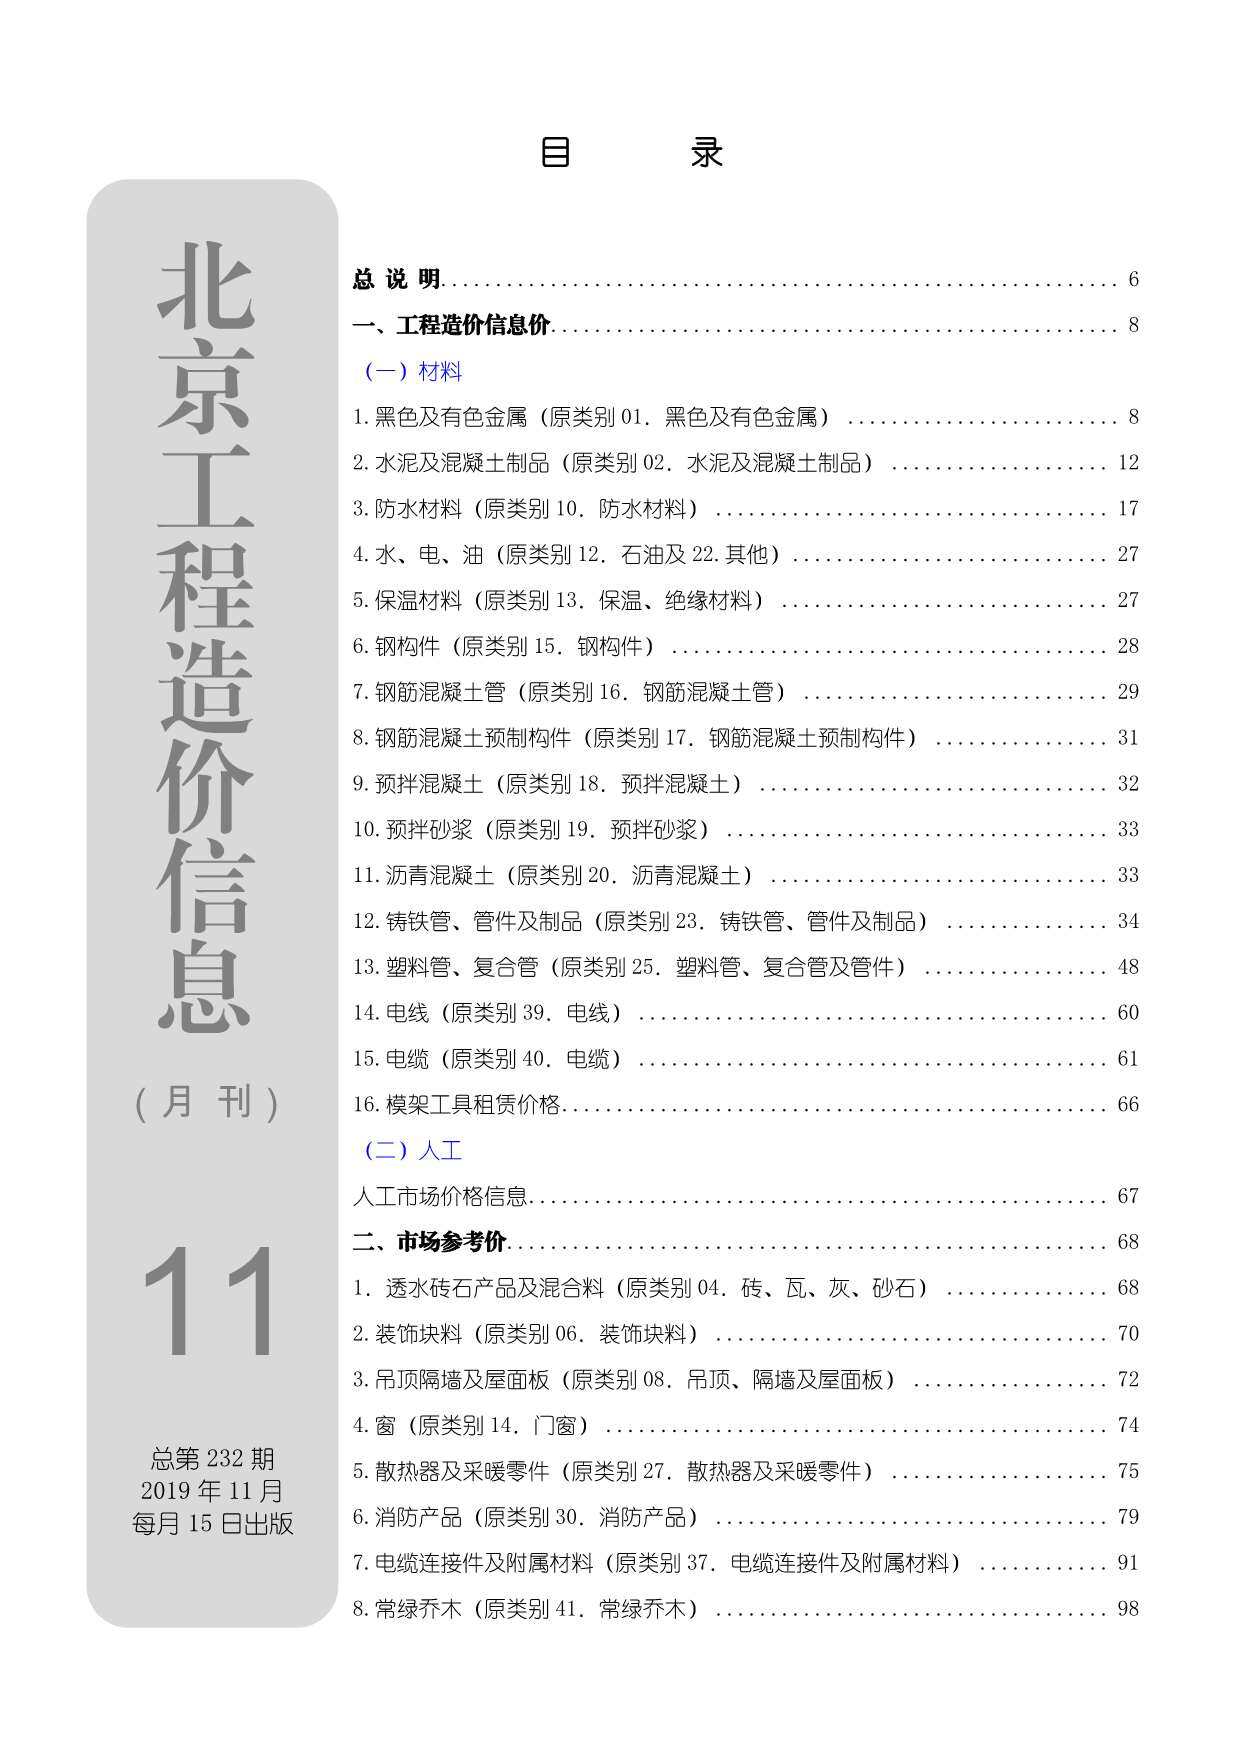 北京市2019年11月工程造价信息期刊